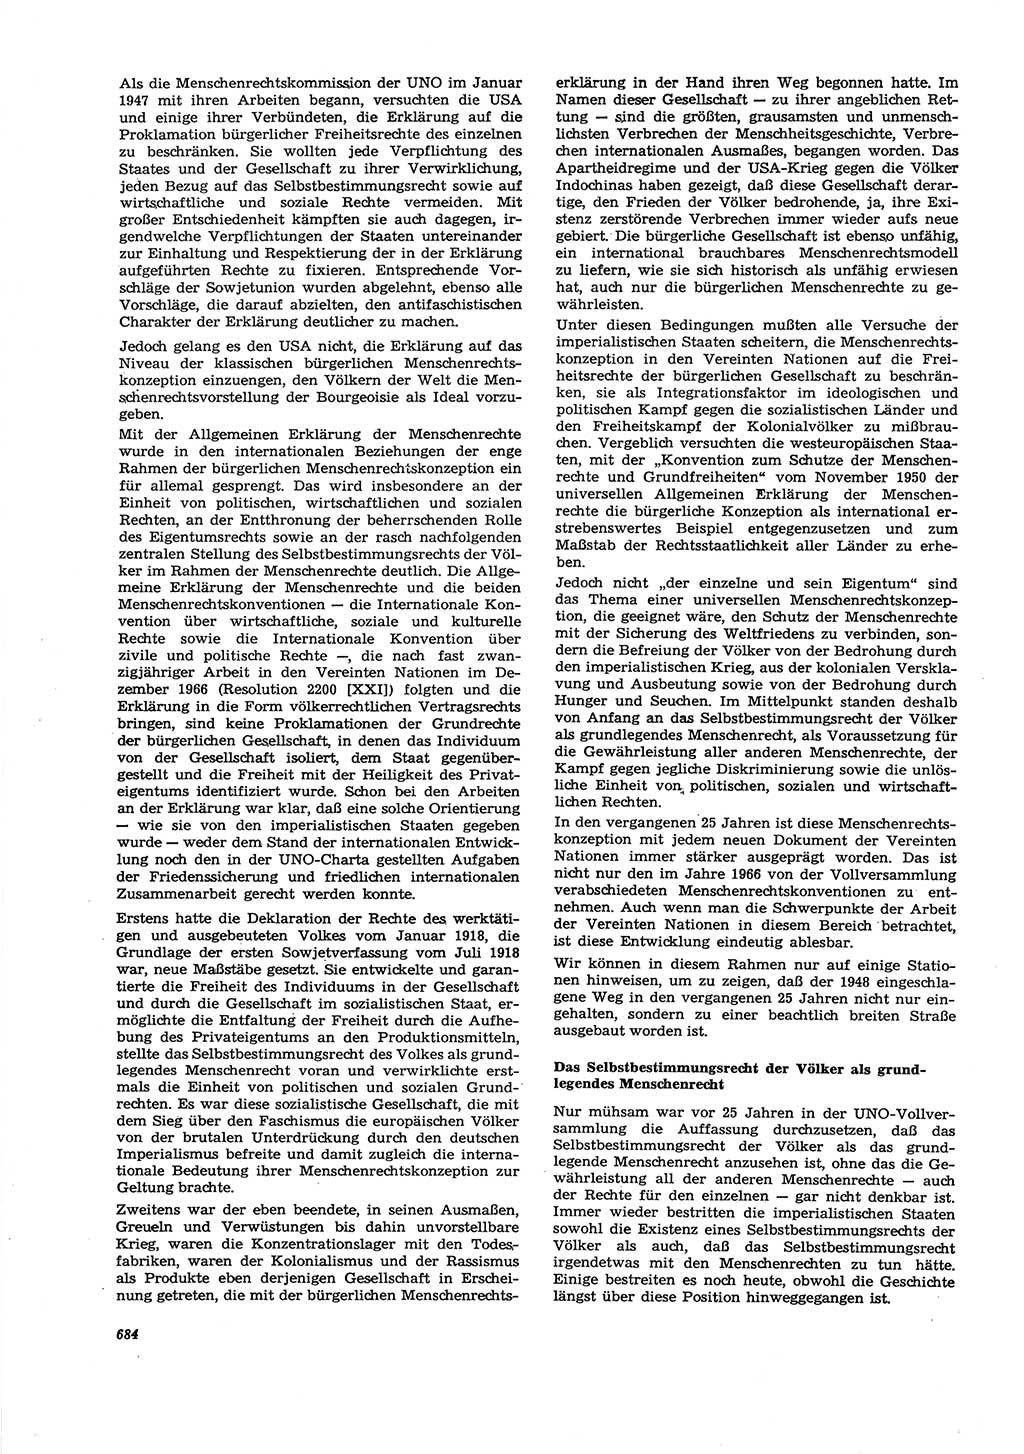 Neue Justiz (NJ), Zeitschrift für Recht und Rechtswissenschaft [Deutsche Demokratische Republik (DDR)], 27. Jahrgang 1973, Seite 684 (NJ DDR 1973, S. 684)